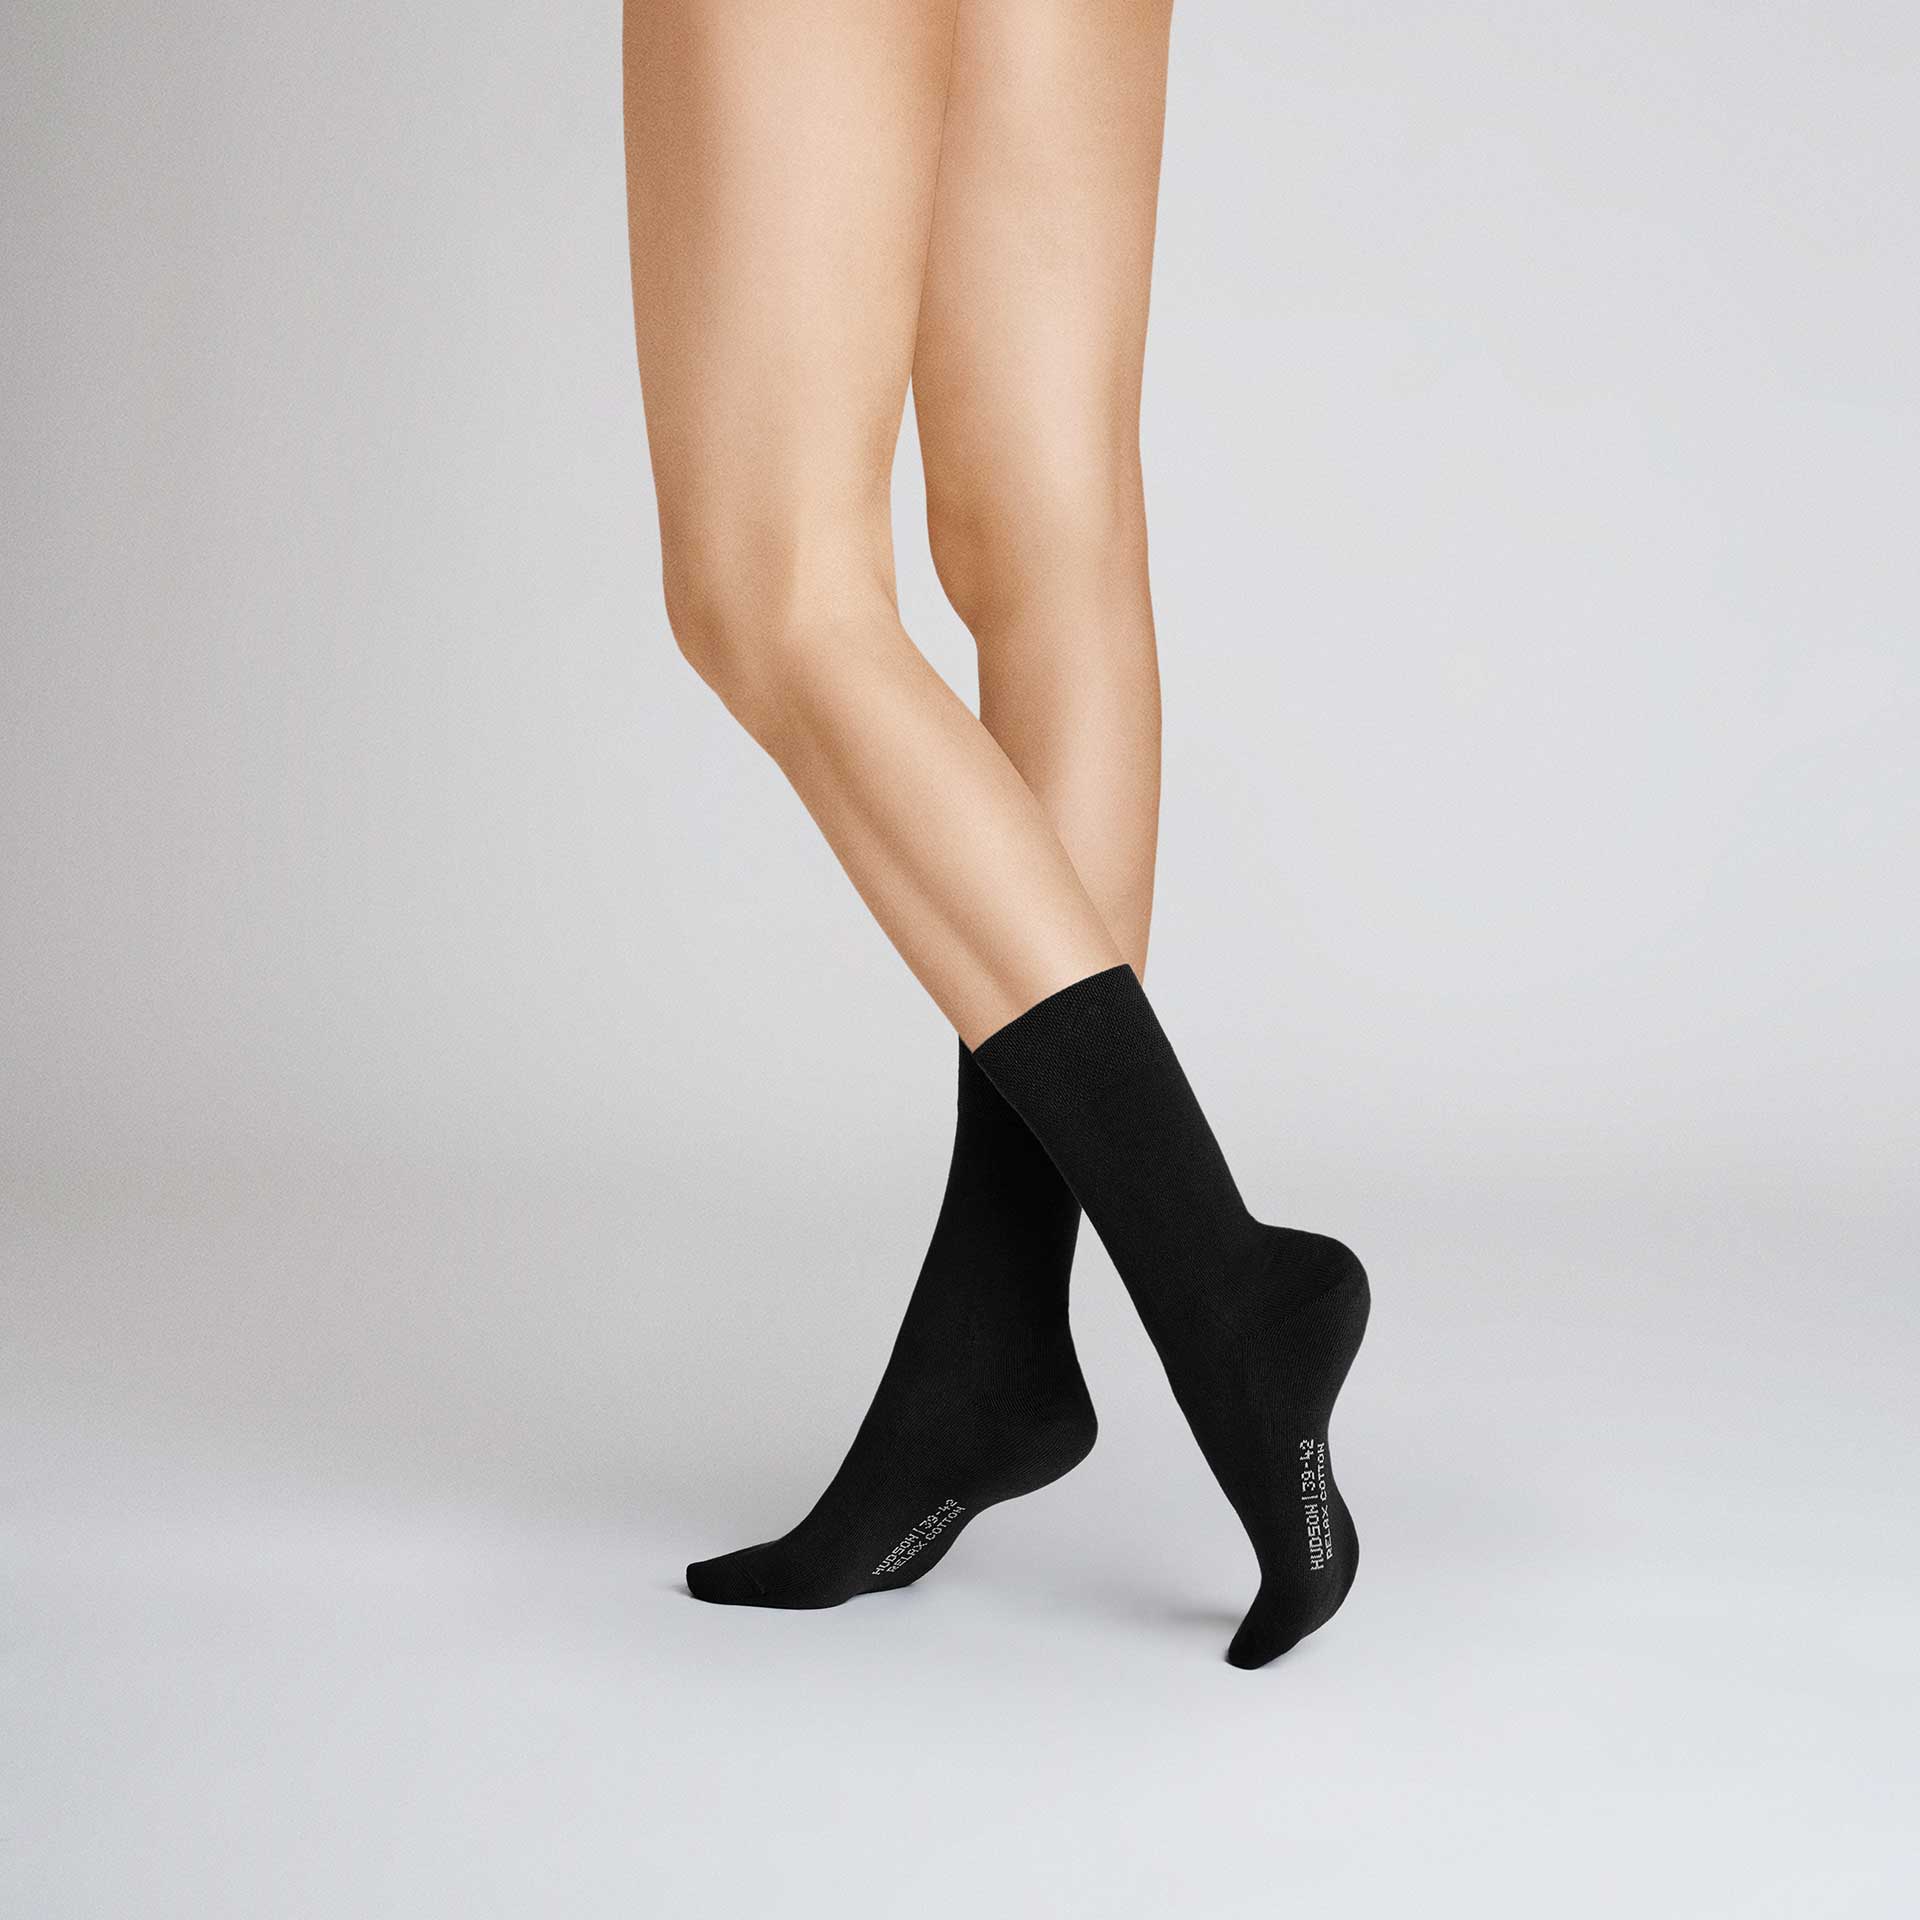 HUDSON Damen RELAX COTTON     -  39/42 - Socken aus 97% Baumwolle - Black (Schwarz)